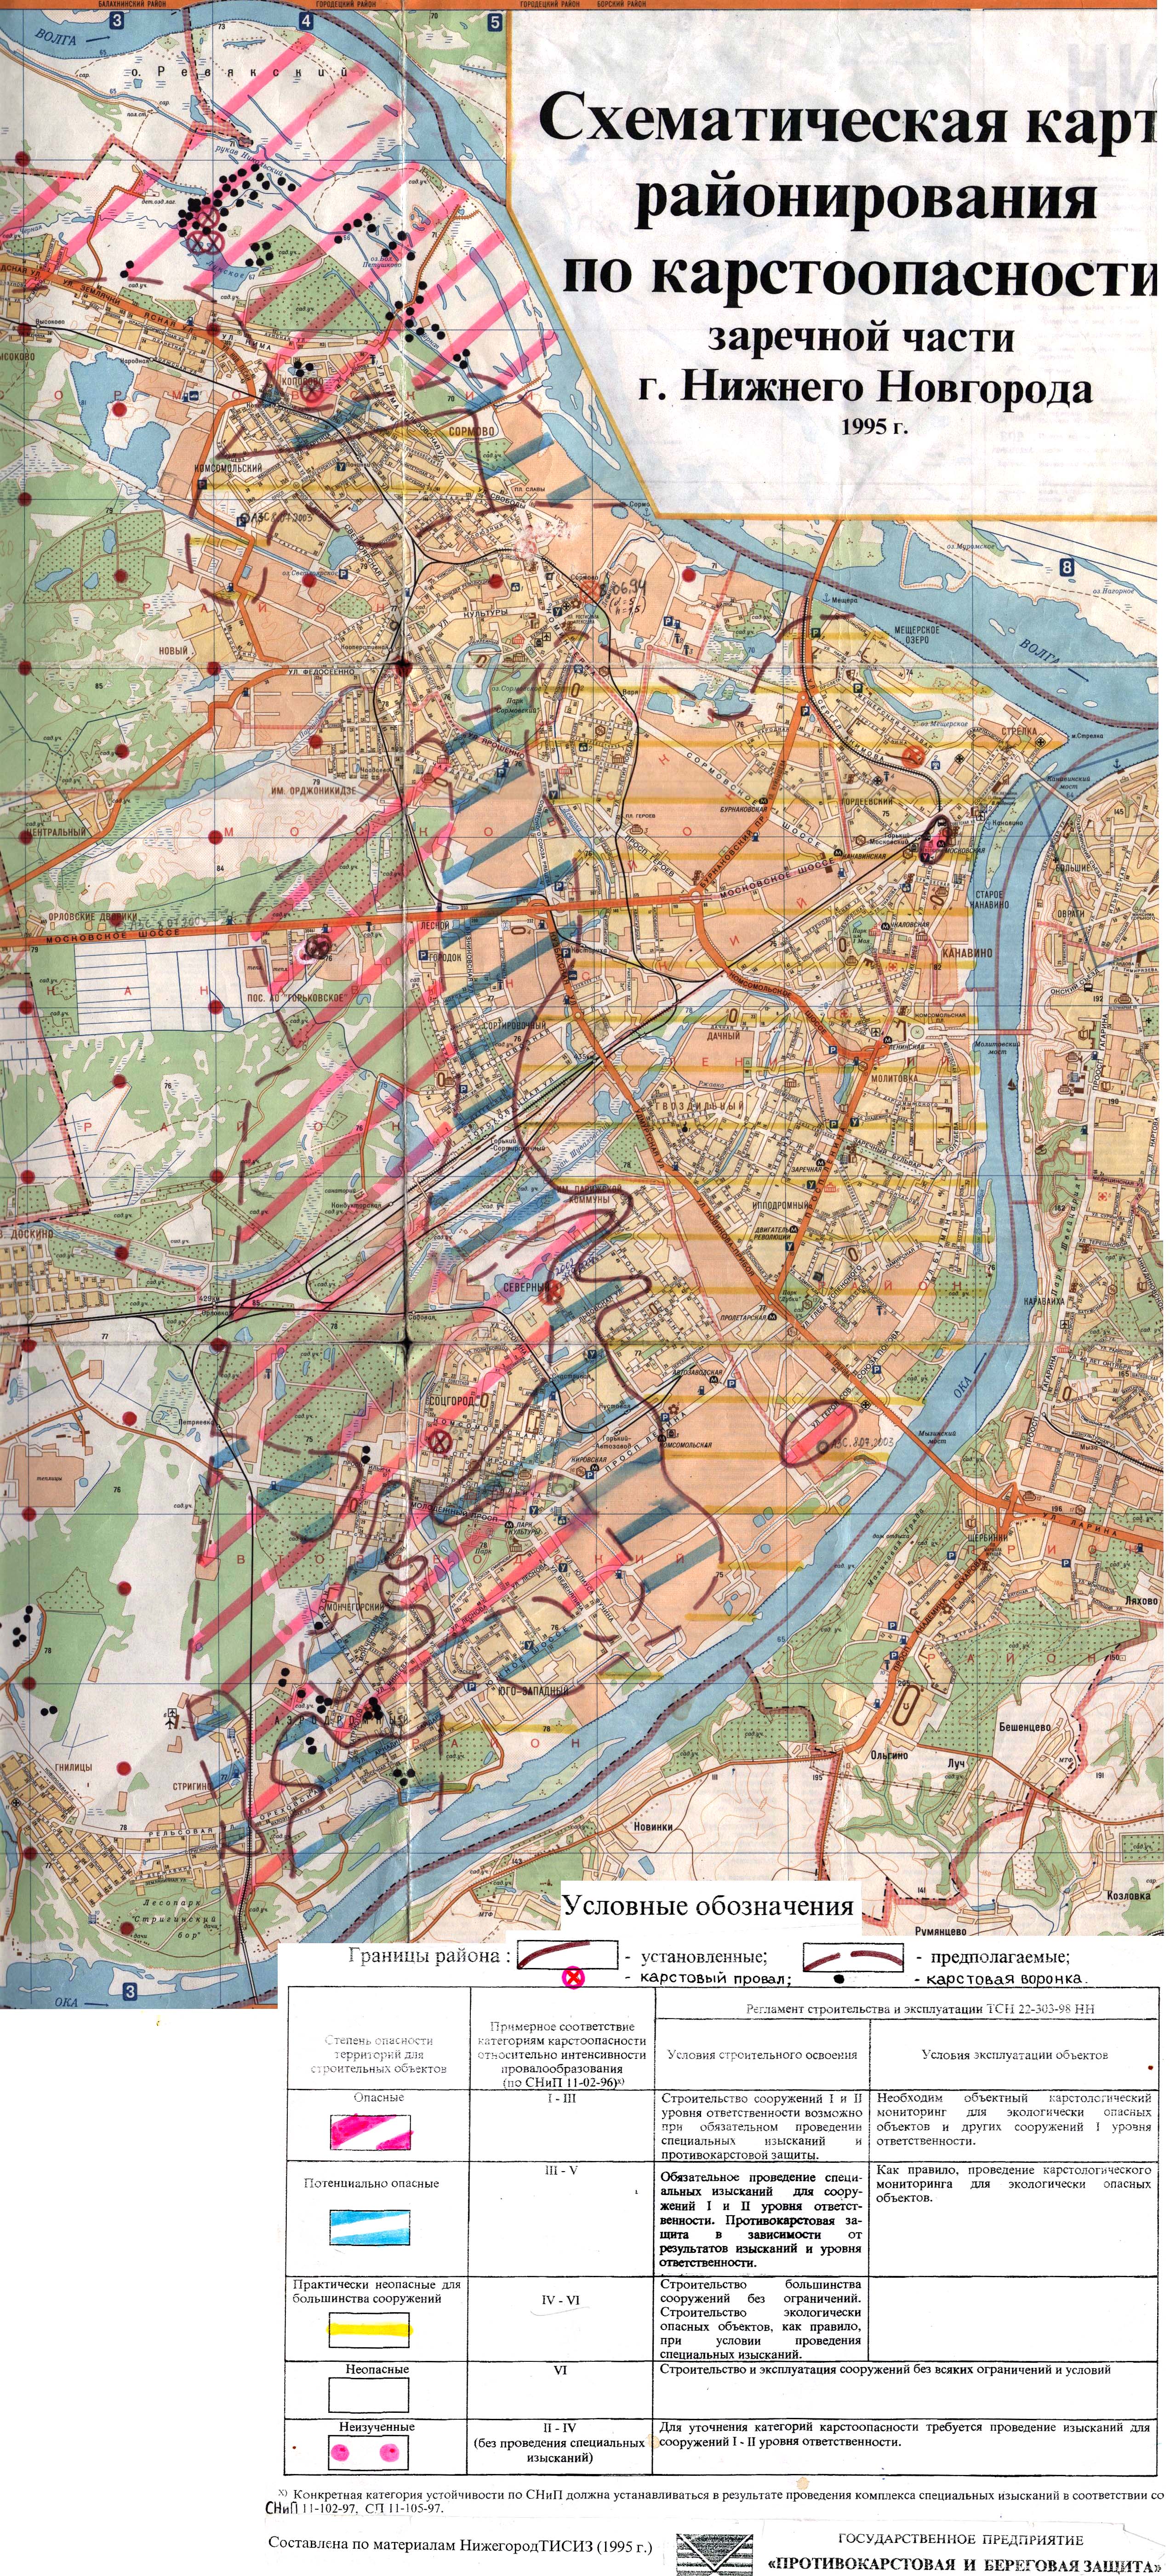 Схематическая карта карстоопасности заречной части Нижнего Новгорода (1995)